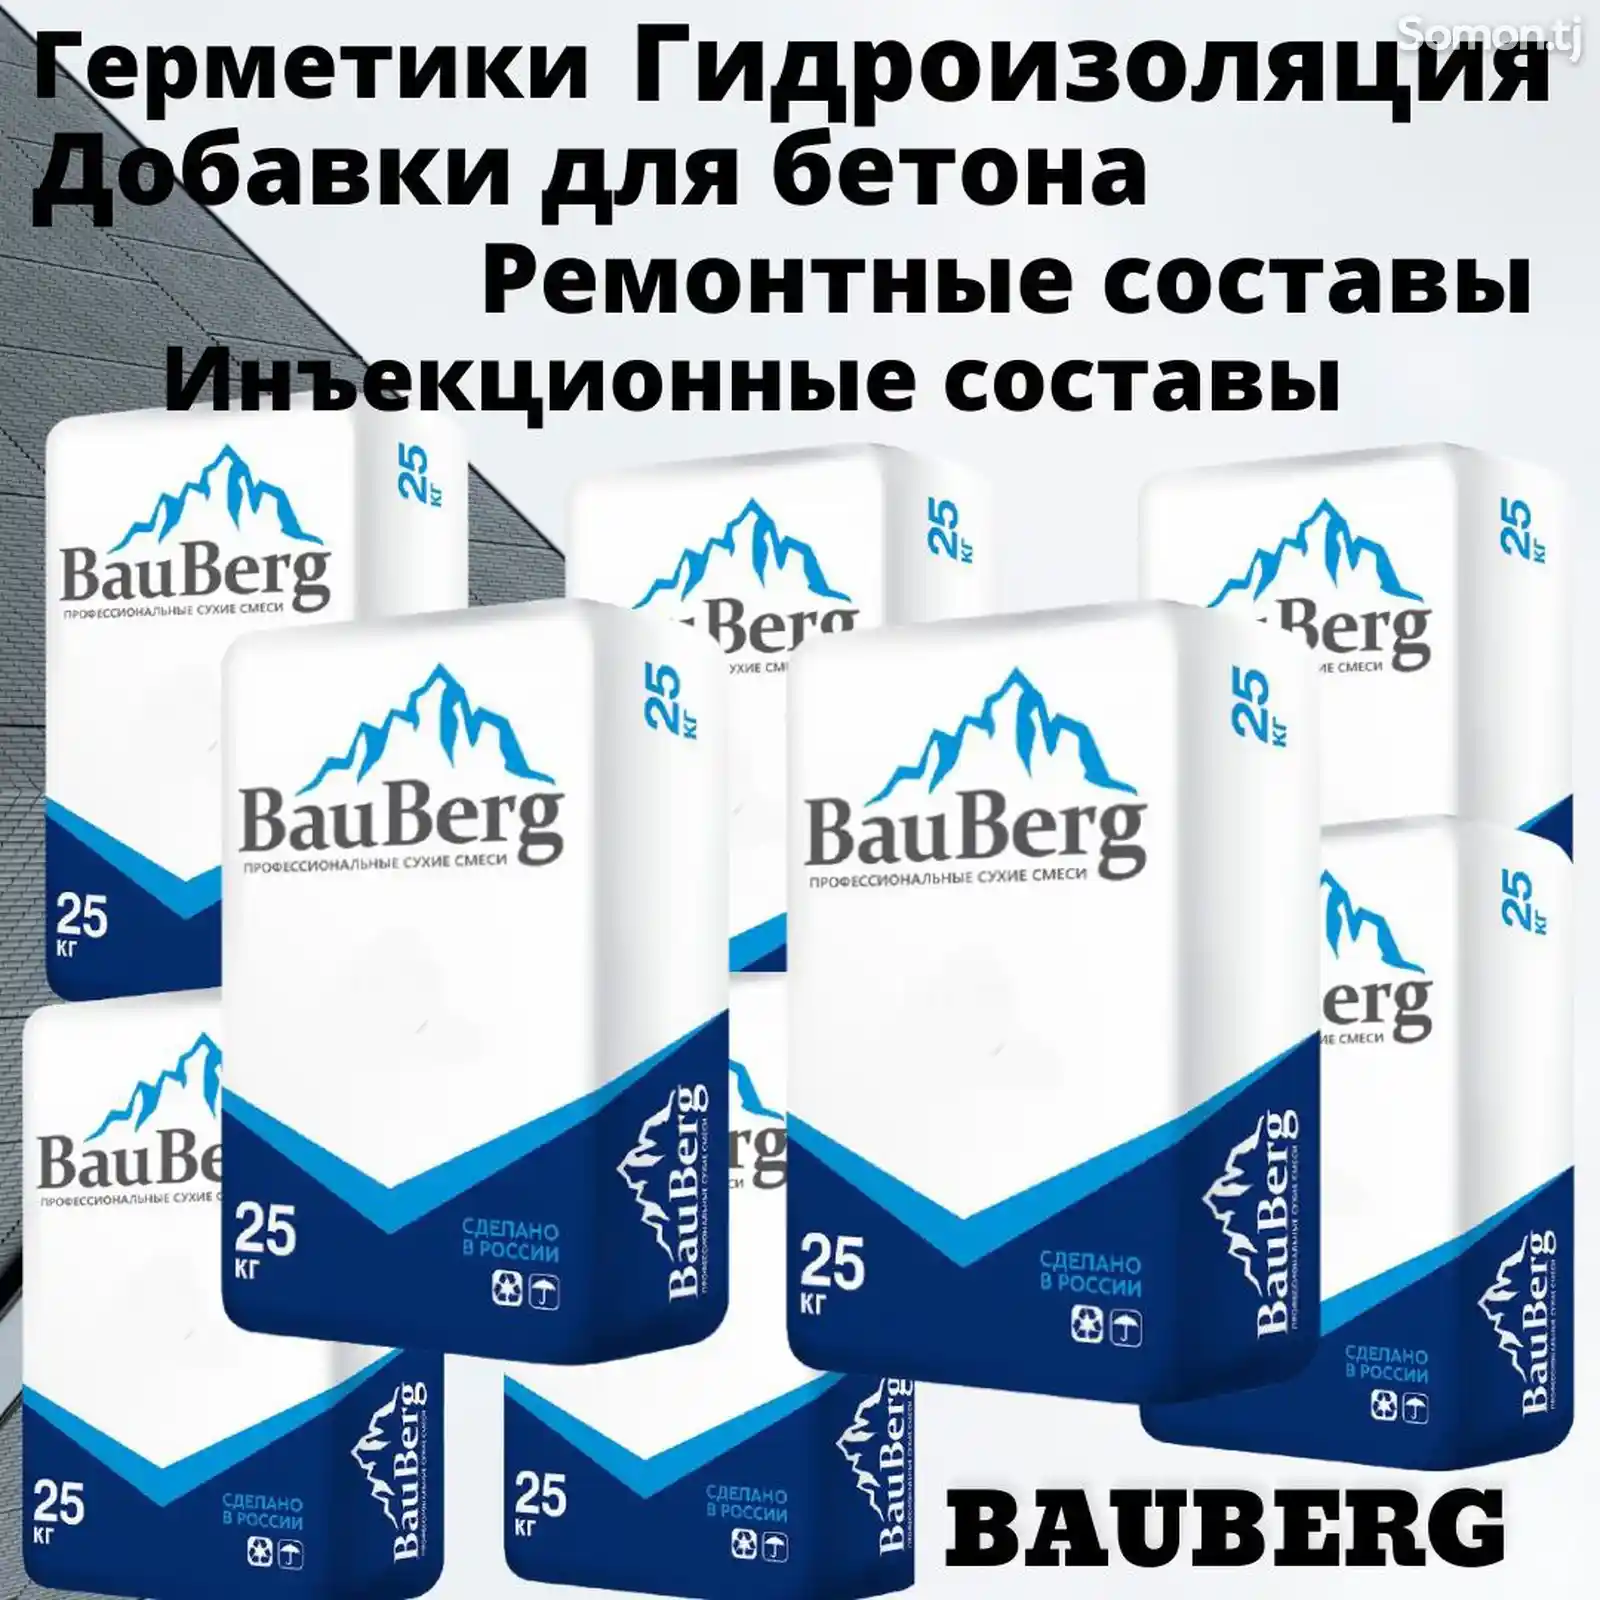 Ремонтная безусадочная литьевая тиксотропная смесь для бетона Bauberg-3